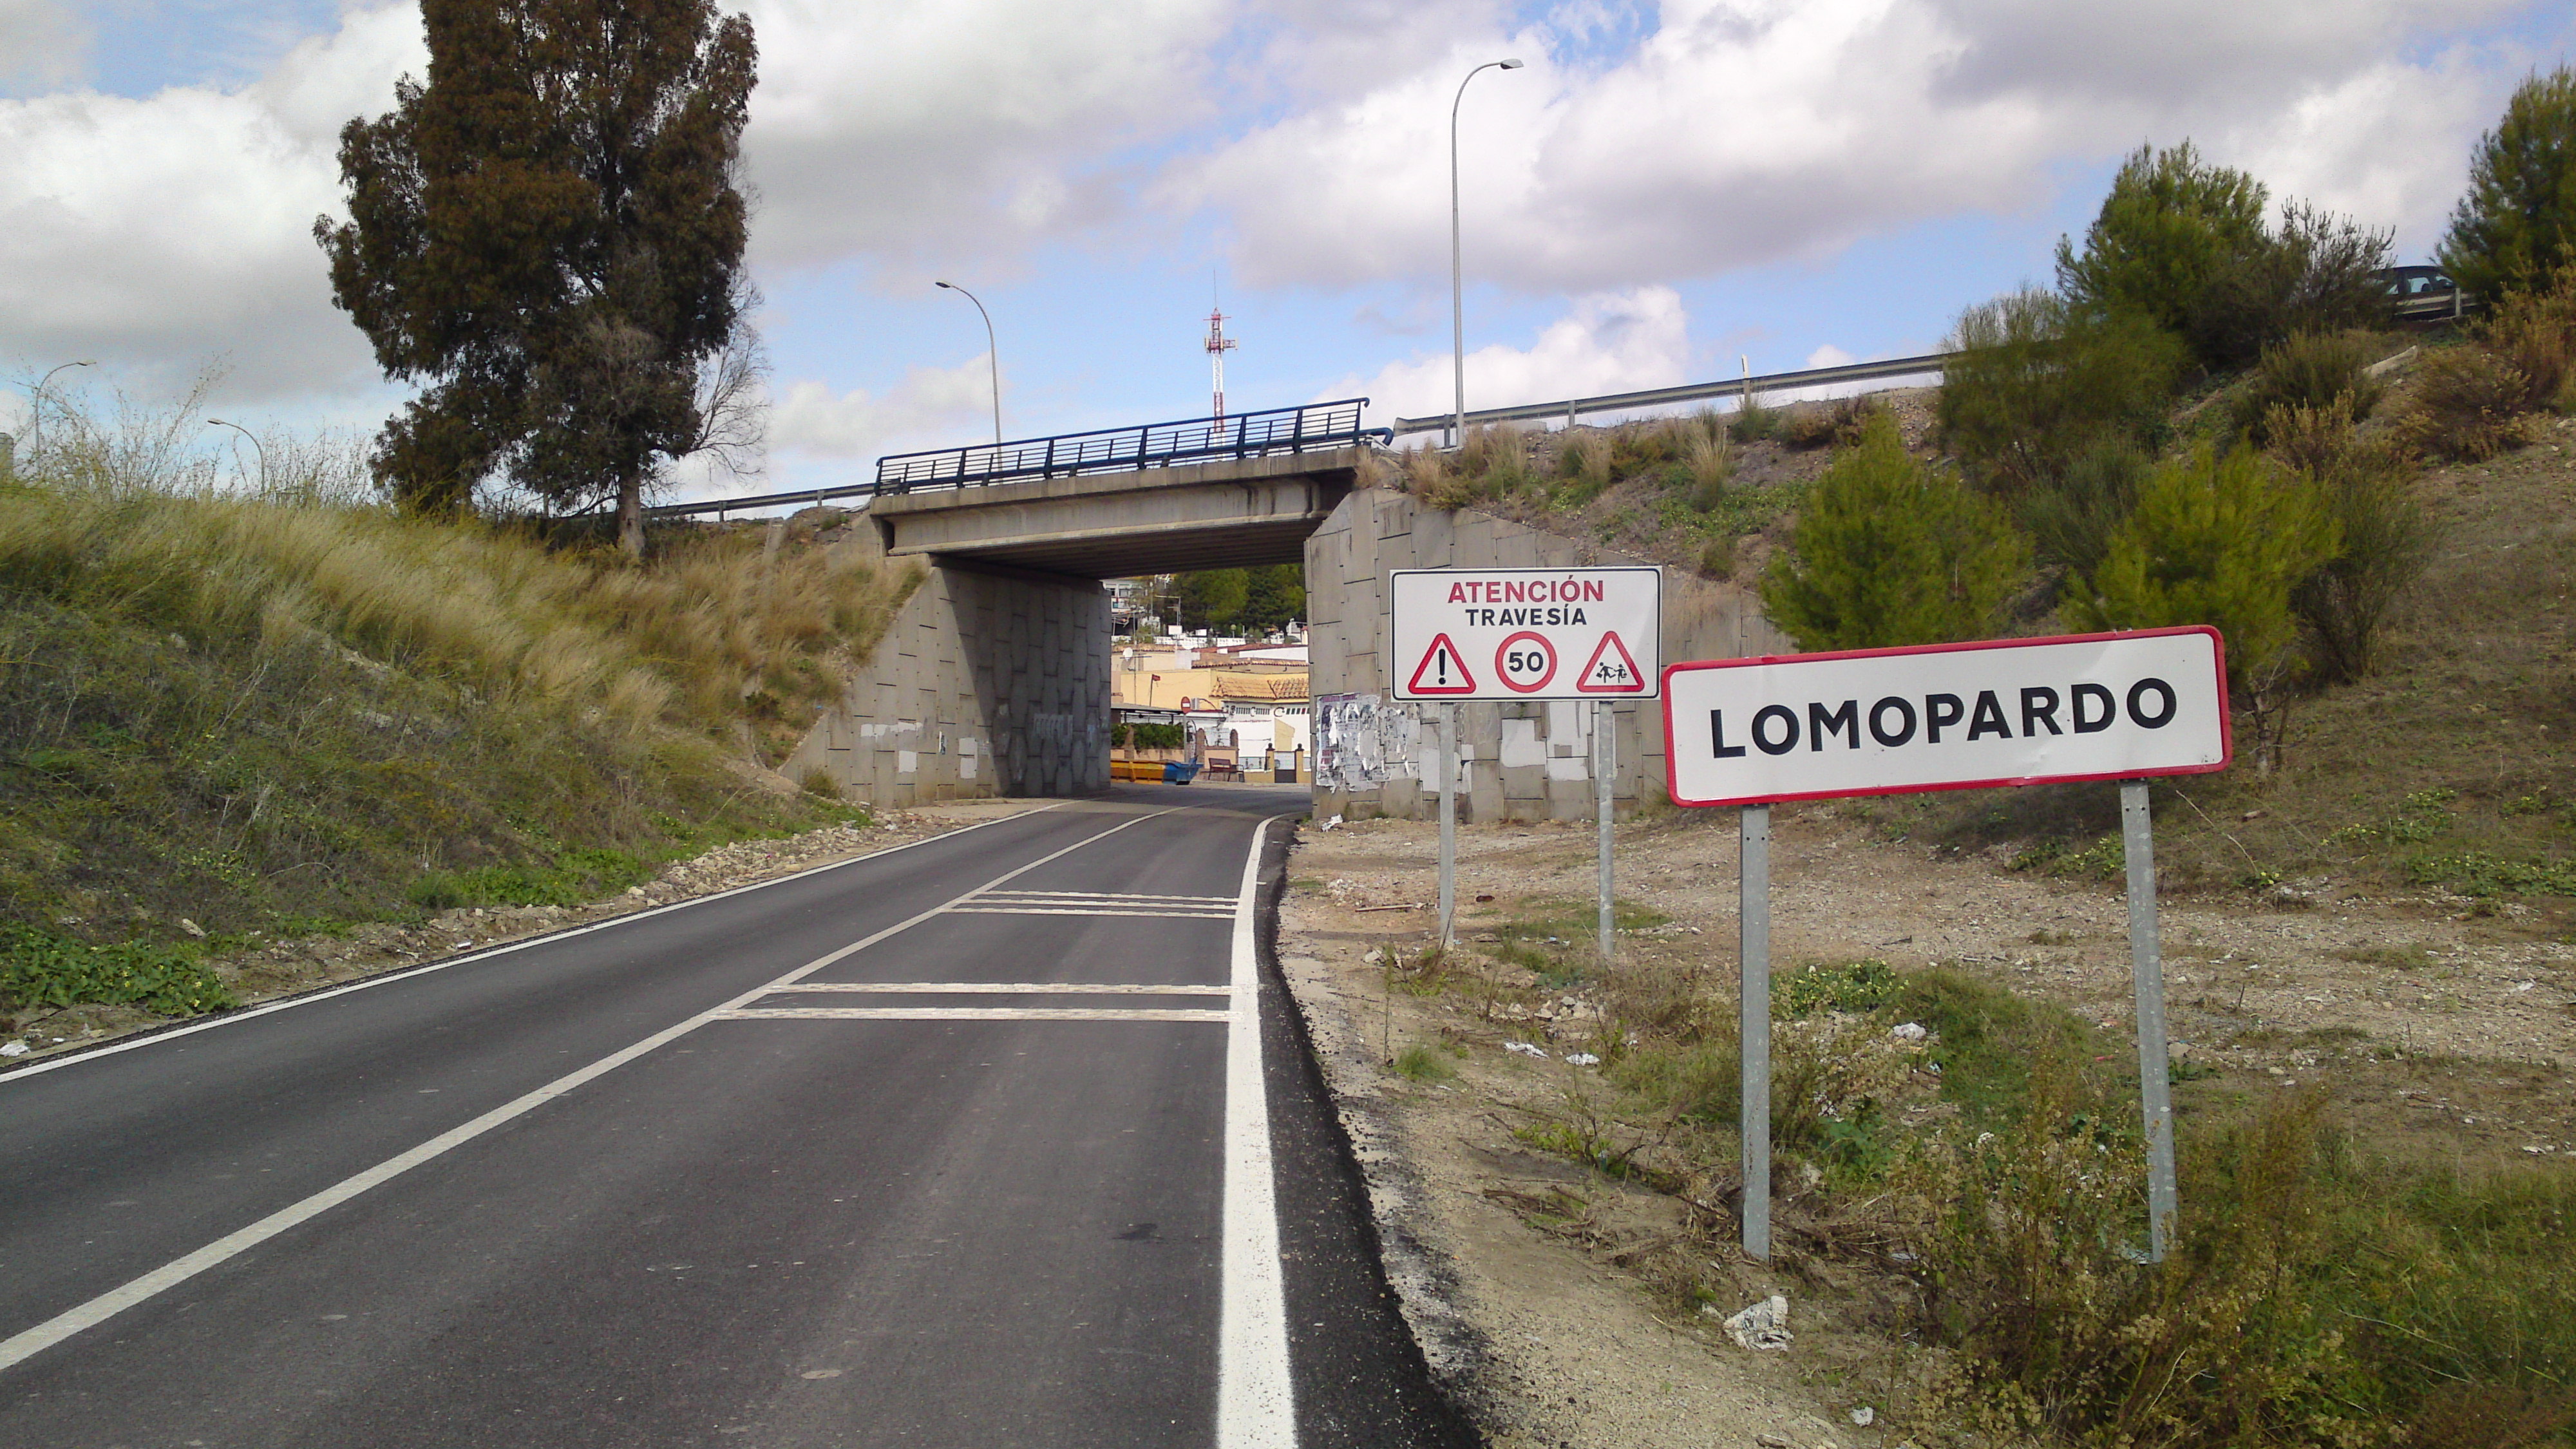 Foto: Llegada a Lomopardo - Lomoparado (Cádiz), España